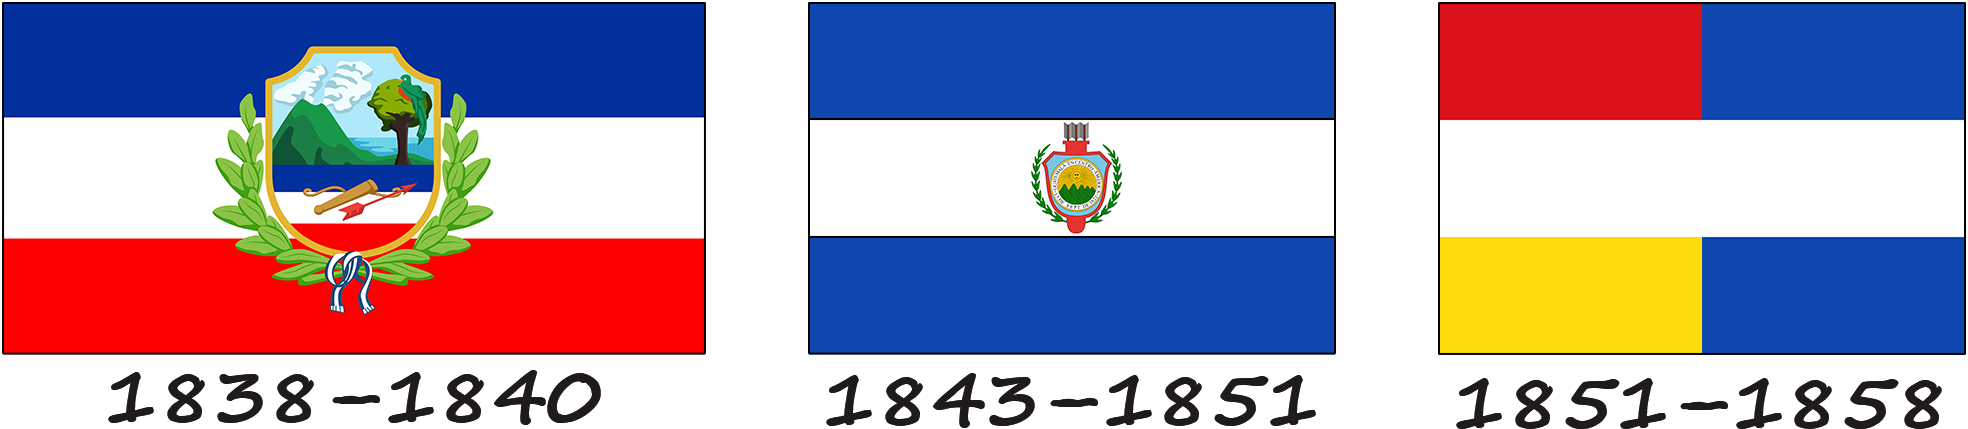 Historia de la bandera de Guatemala